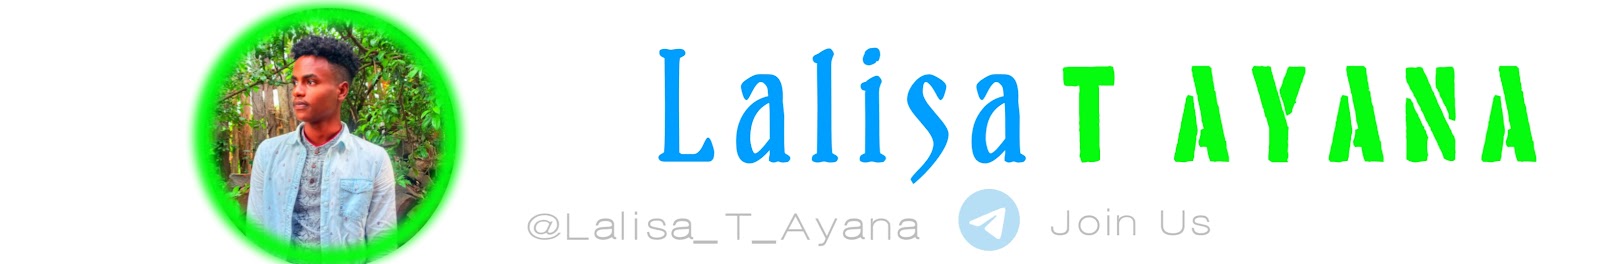 Lalisa T Ayana 